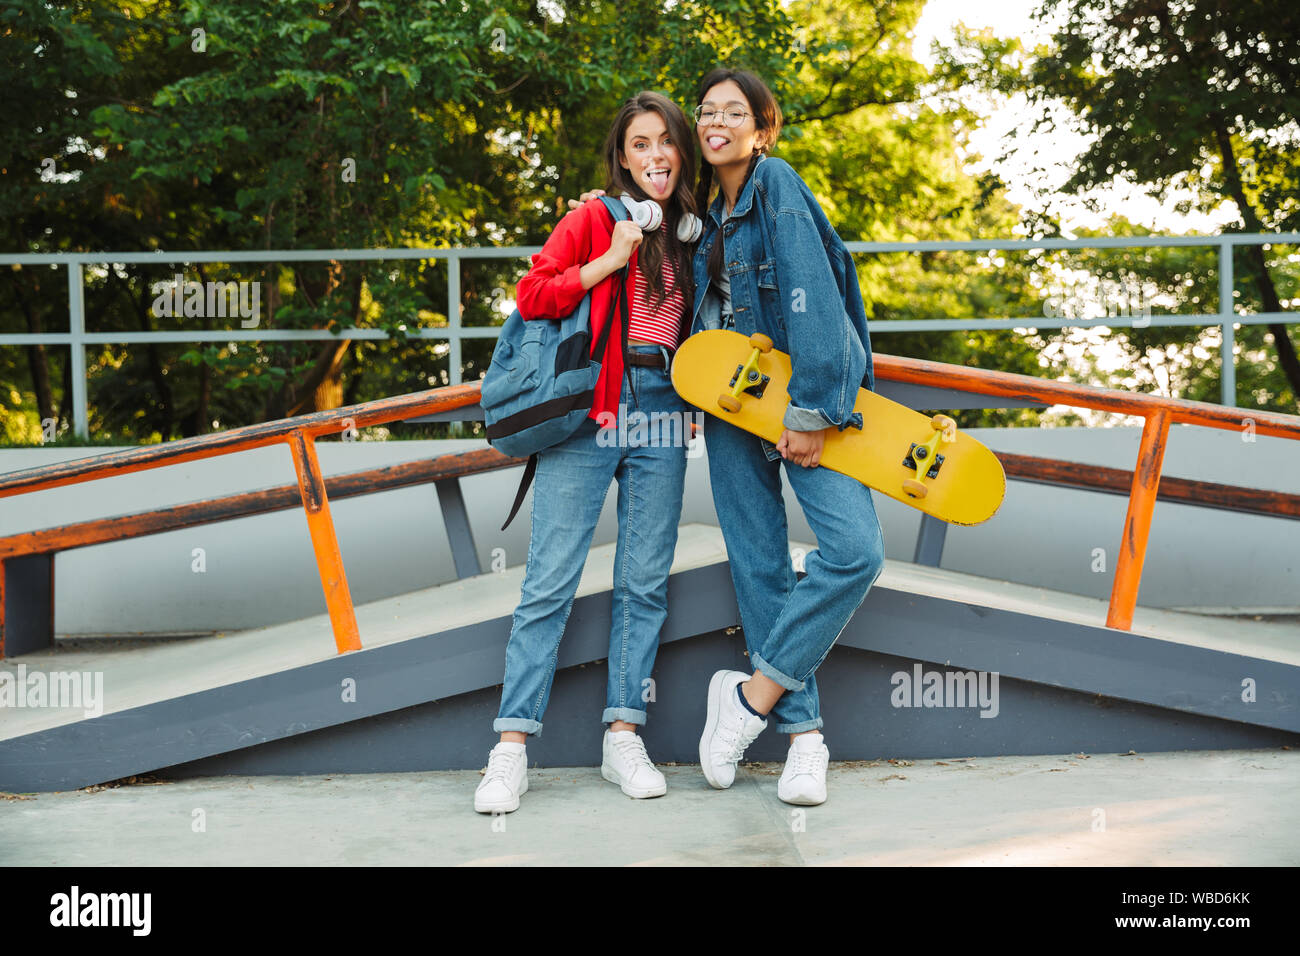 Image de deux filles de joie vêtu de vêtements en denim collage hors de leurs langues et s'étreindre en maintenant en skateboard skate park Banque D'Images